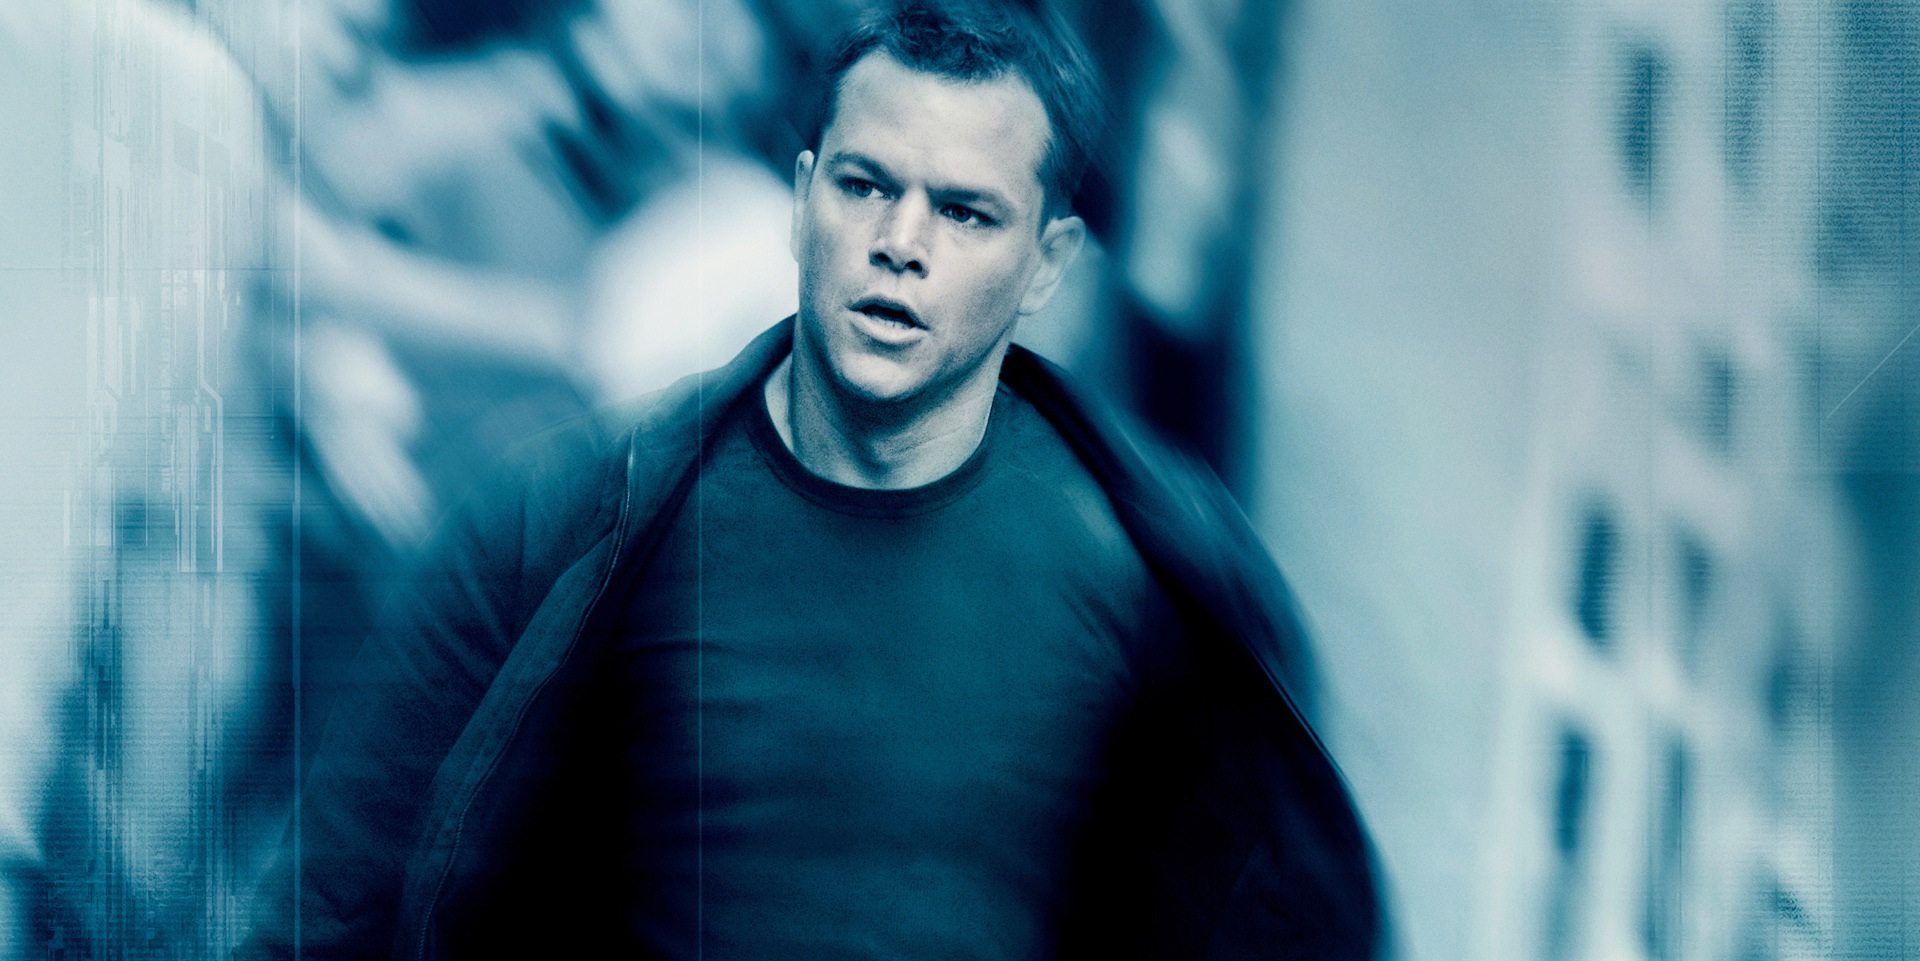 Jason Bourne is back